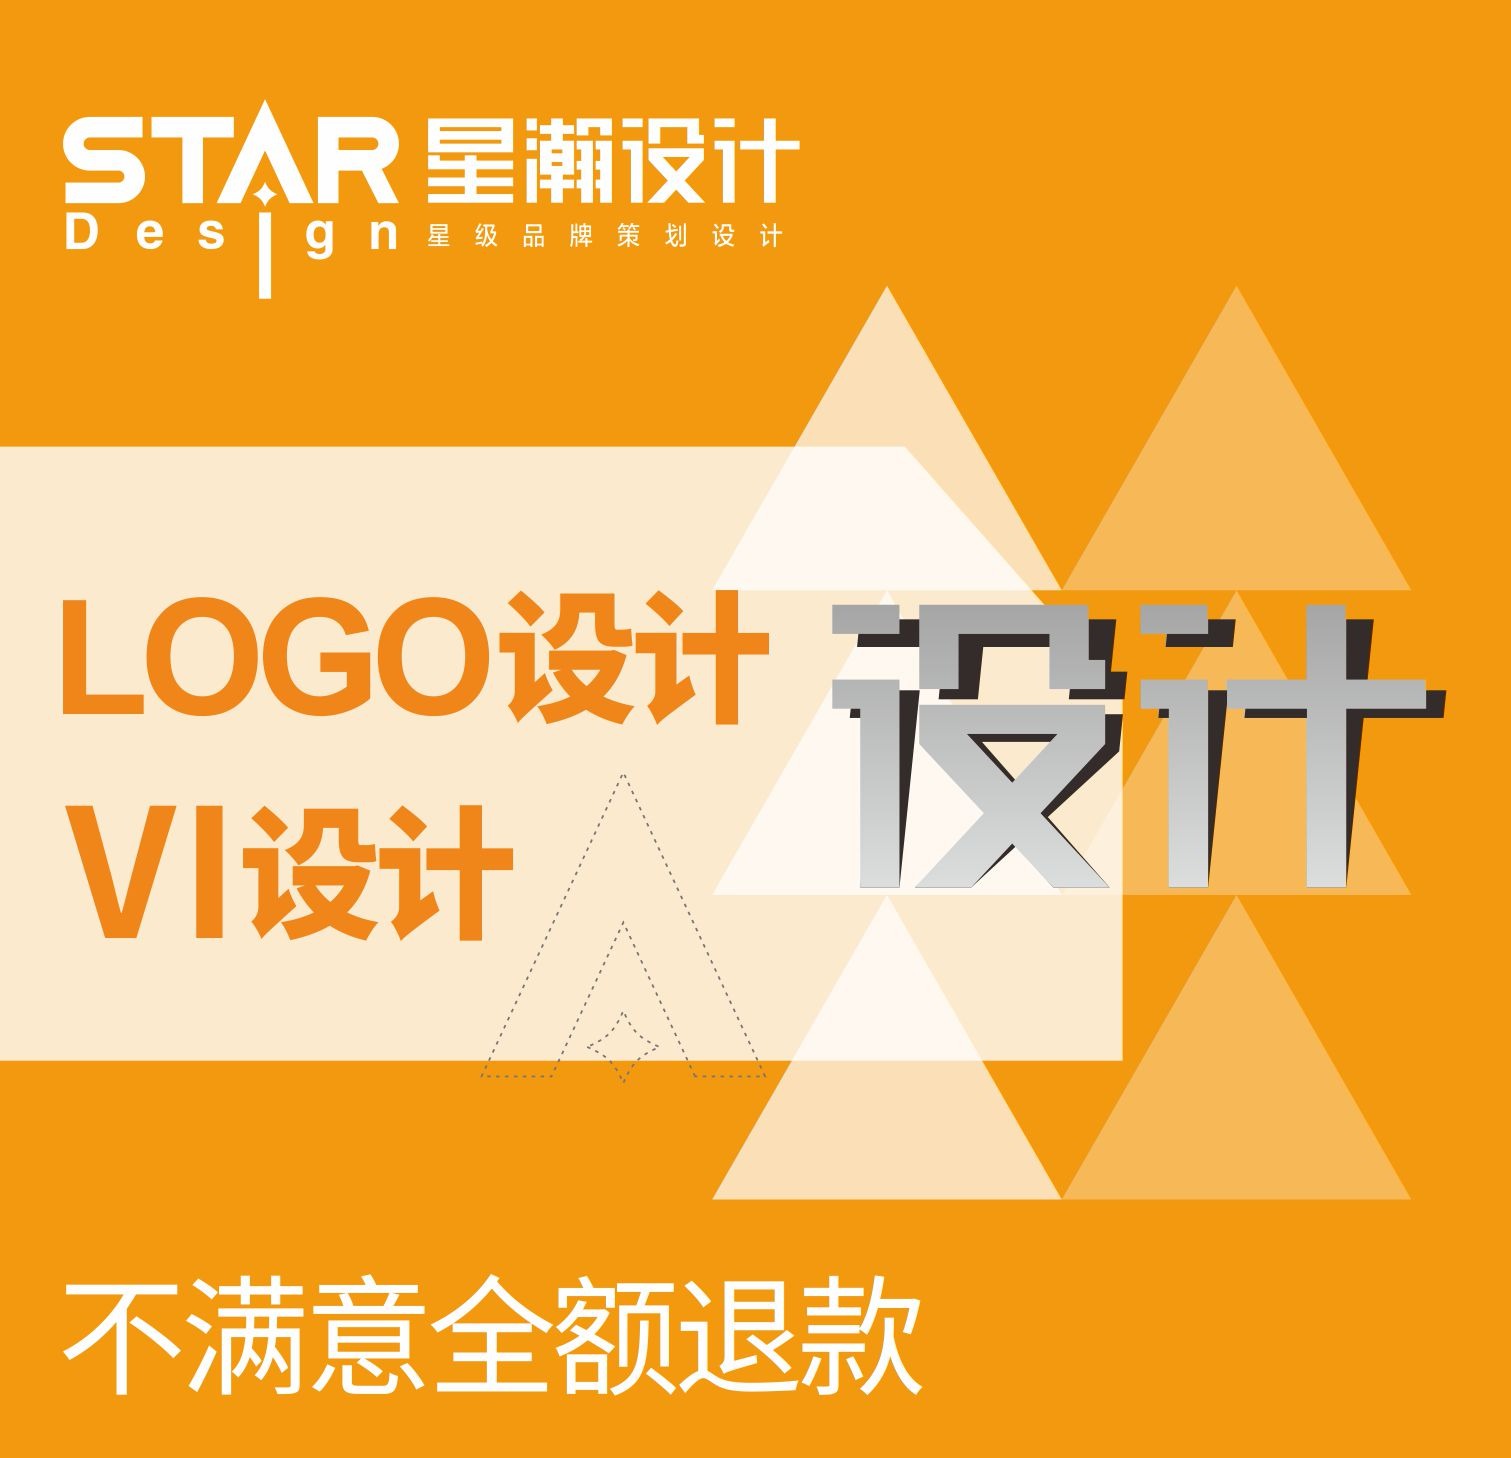 品牌设计策划、标志设计、VI设计、VI系统规范、logo设计